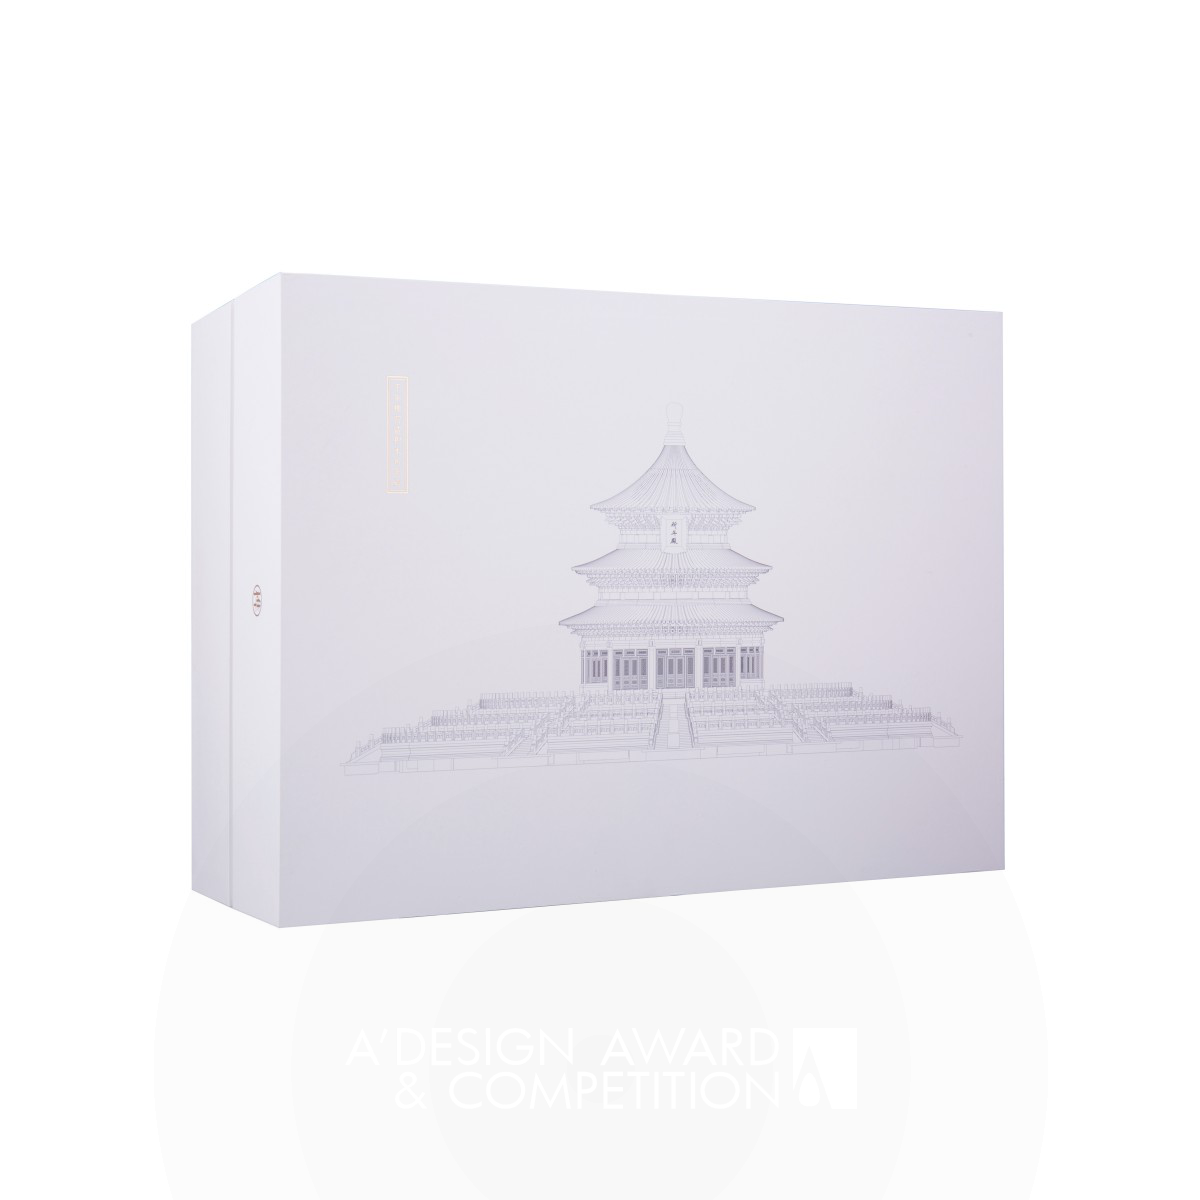 Mi Temple of Heaven Builder Packaging: Menghidupkan Kembali Budaya Arsitektur Kekaisaran China